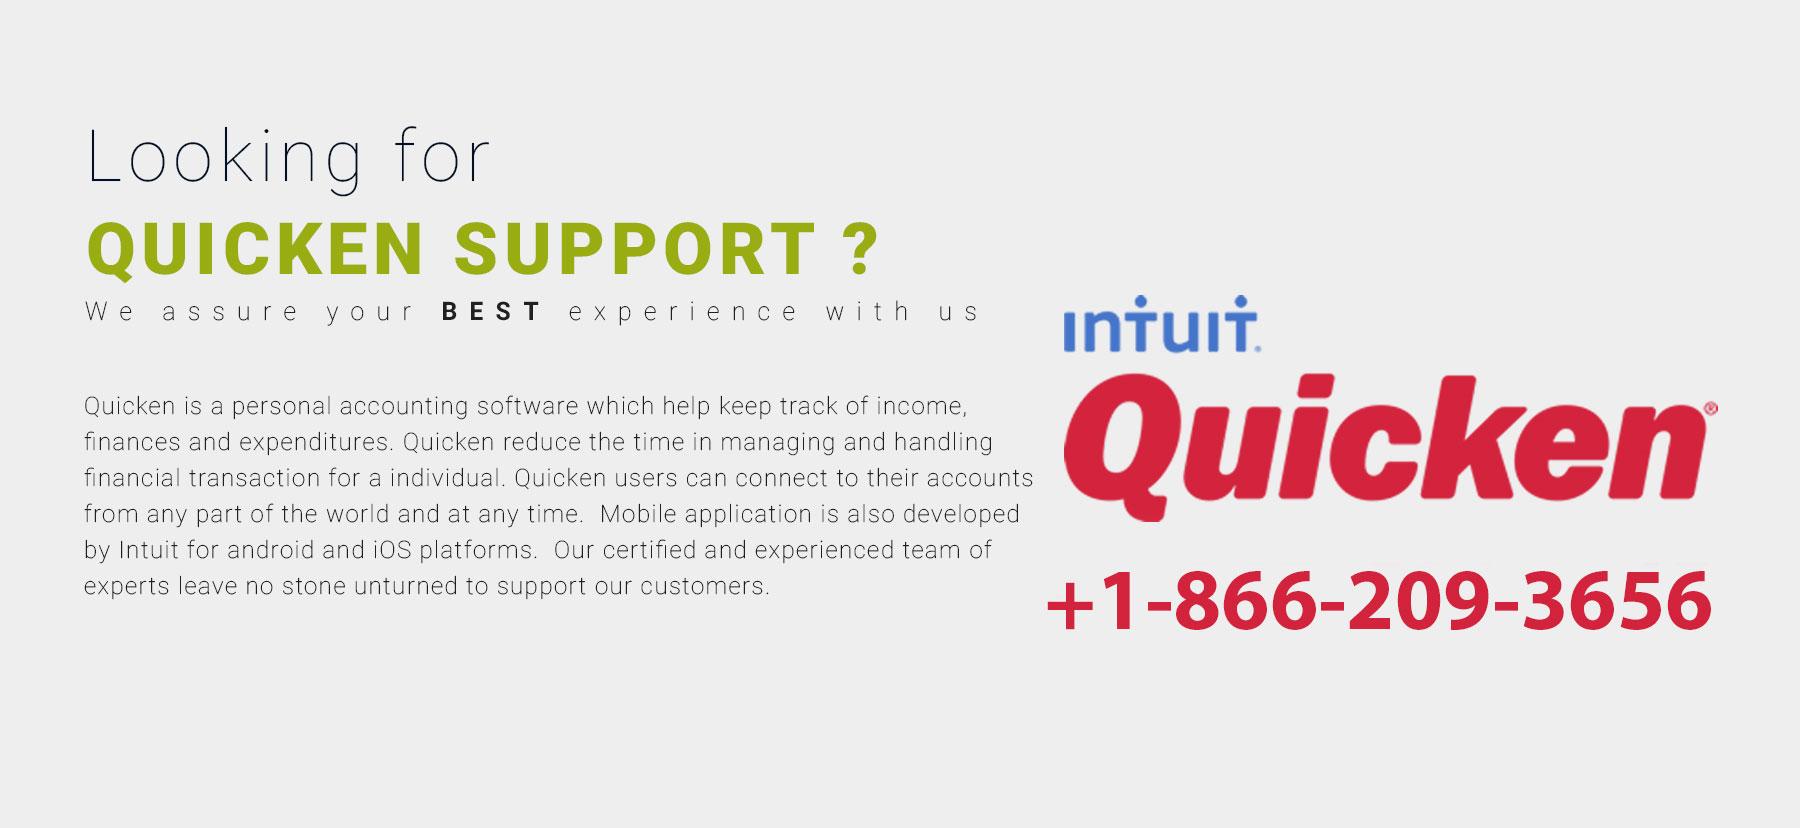 Intuit Quicken Logo - Intuit Quciken Support - Intuit Quicken Support